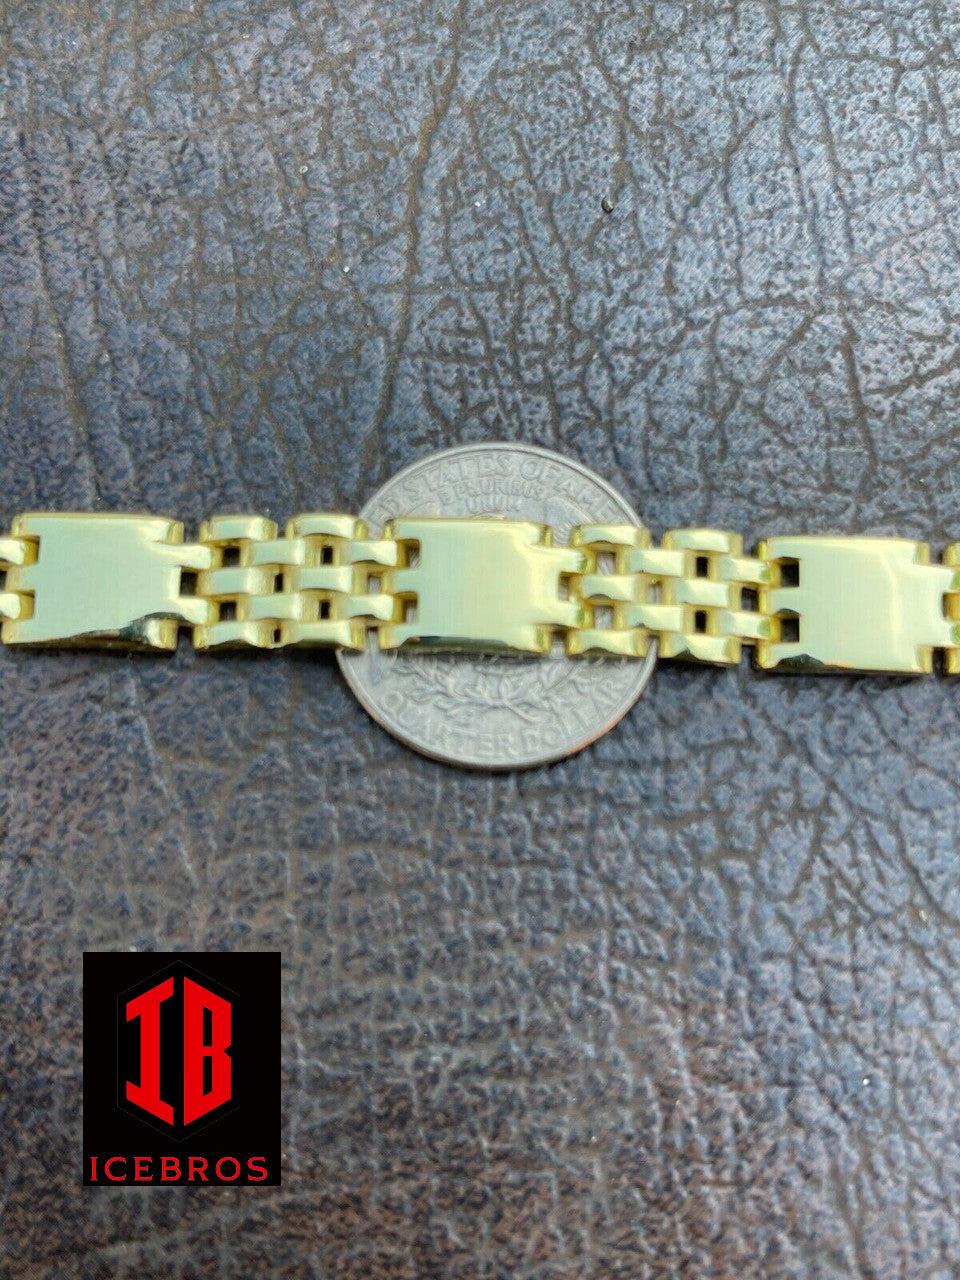 14k Gold Vermeil Real 925 Sterling Silver Plain Presidential Link Bracelet